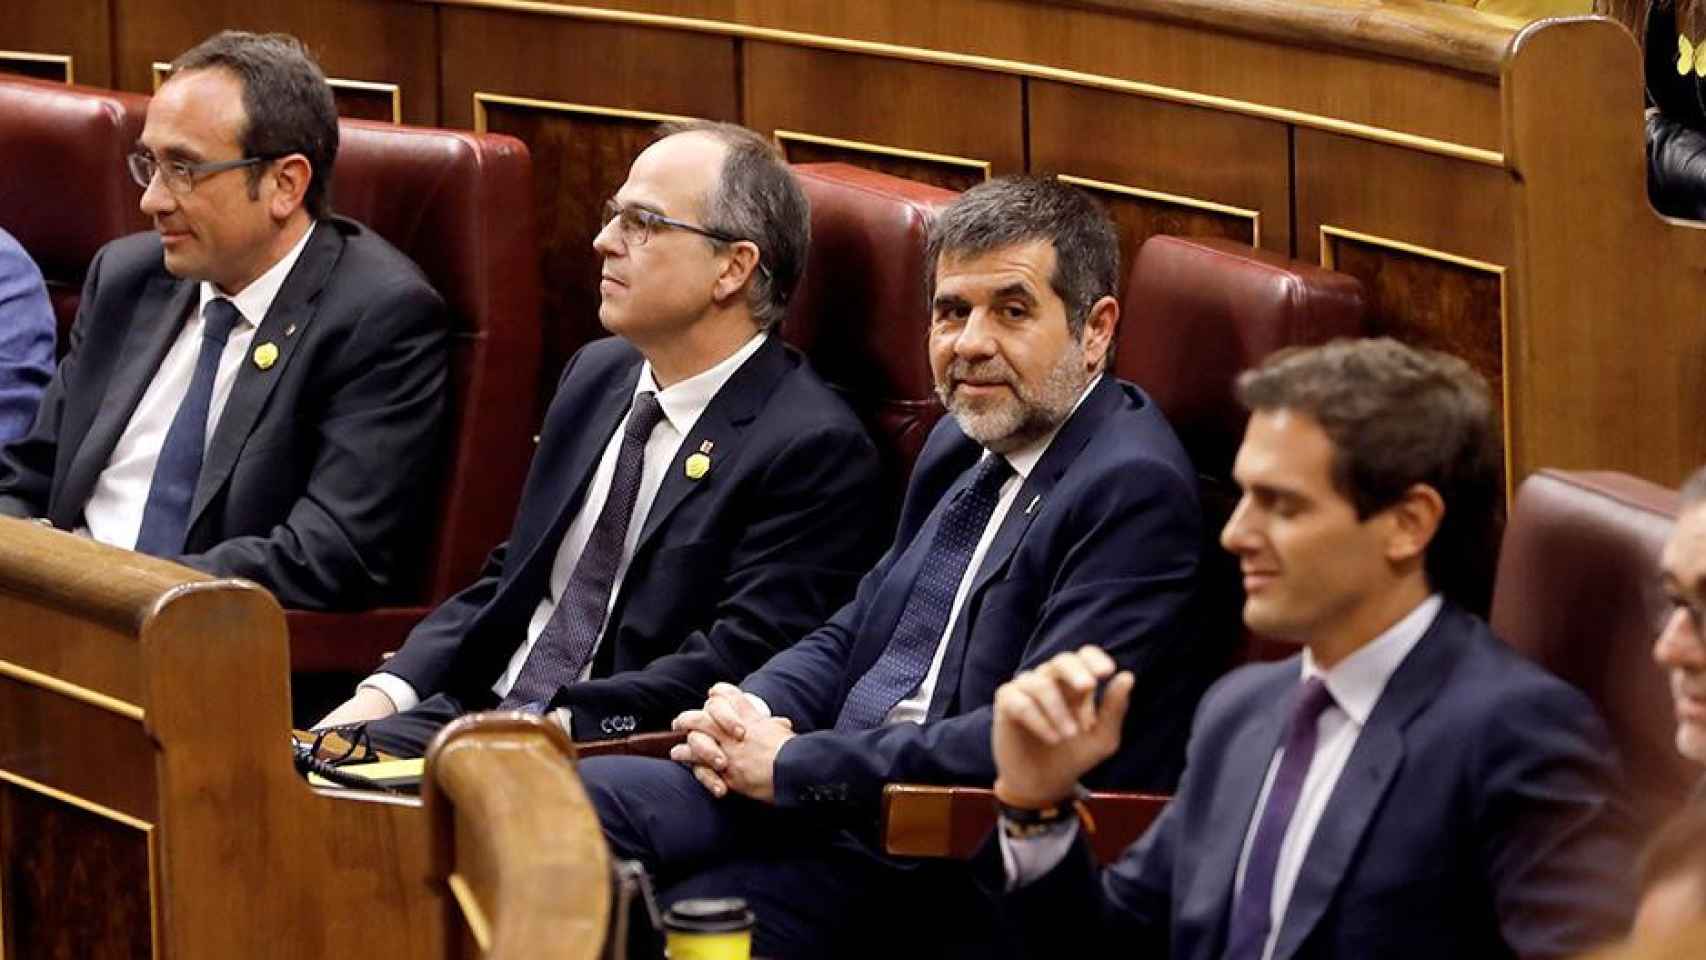 Los diputados presos de JxCat Jordi Sánchez (3i), Jordi Turull (2i) y Josep Rull (i), junto al líder de Ciudadanos, Albert Rivera (d). Imagen del artículo 'No lo volverán a hacer' / EFE